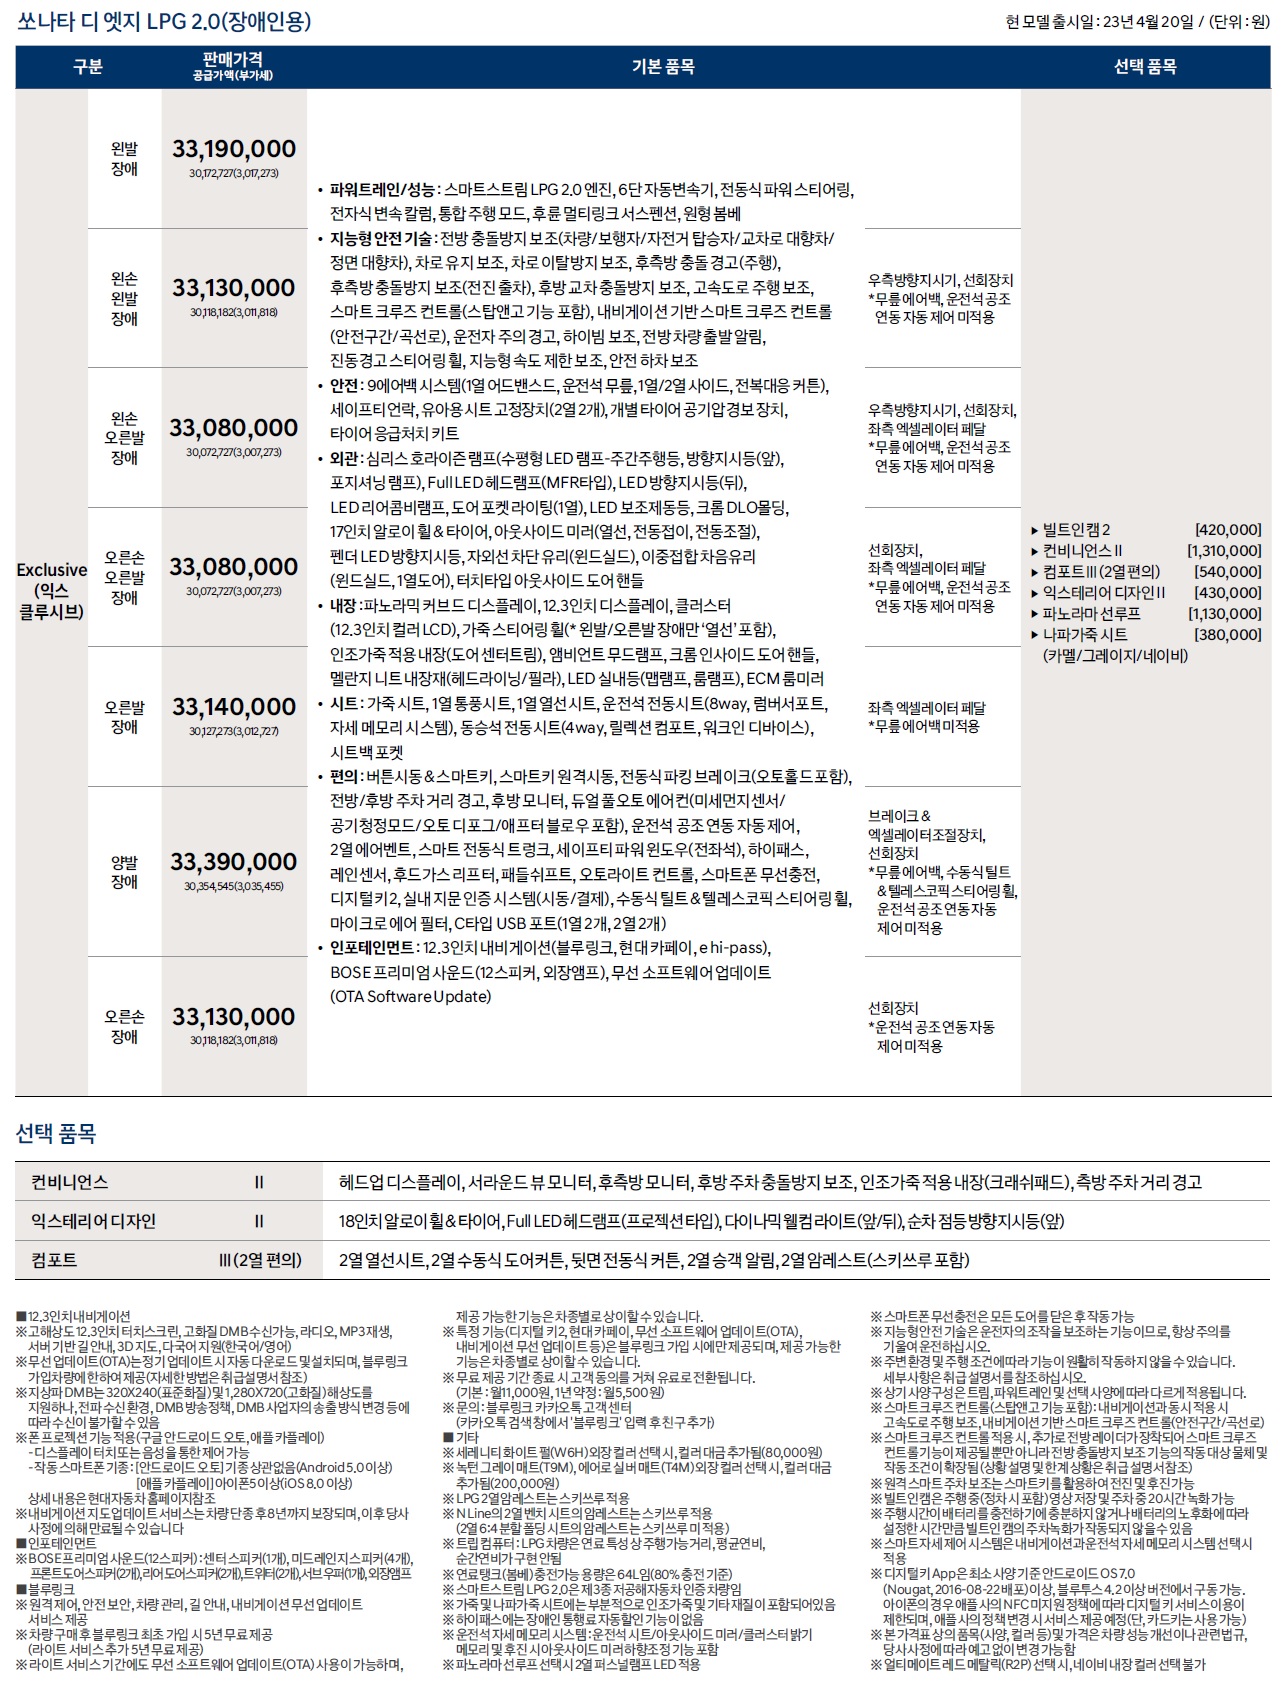 쏘나타 가격표 - 2023년 04월 (쏘나타 디엣지) -7.jpg